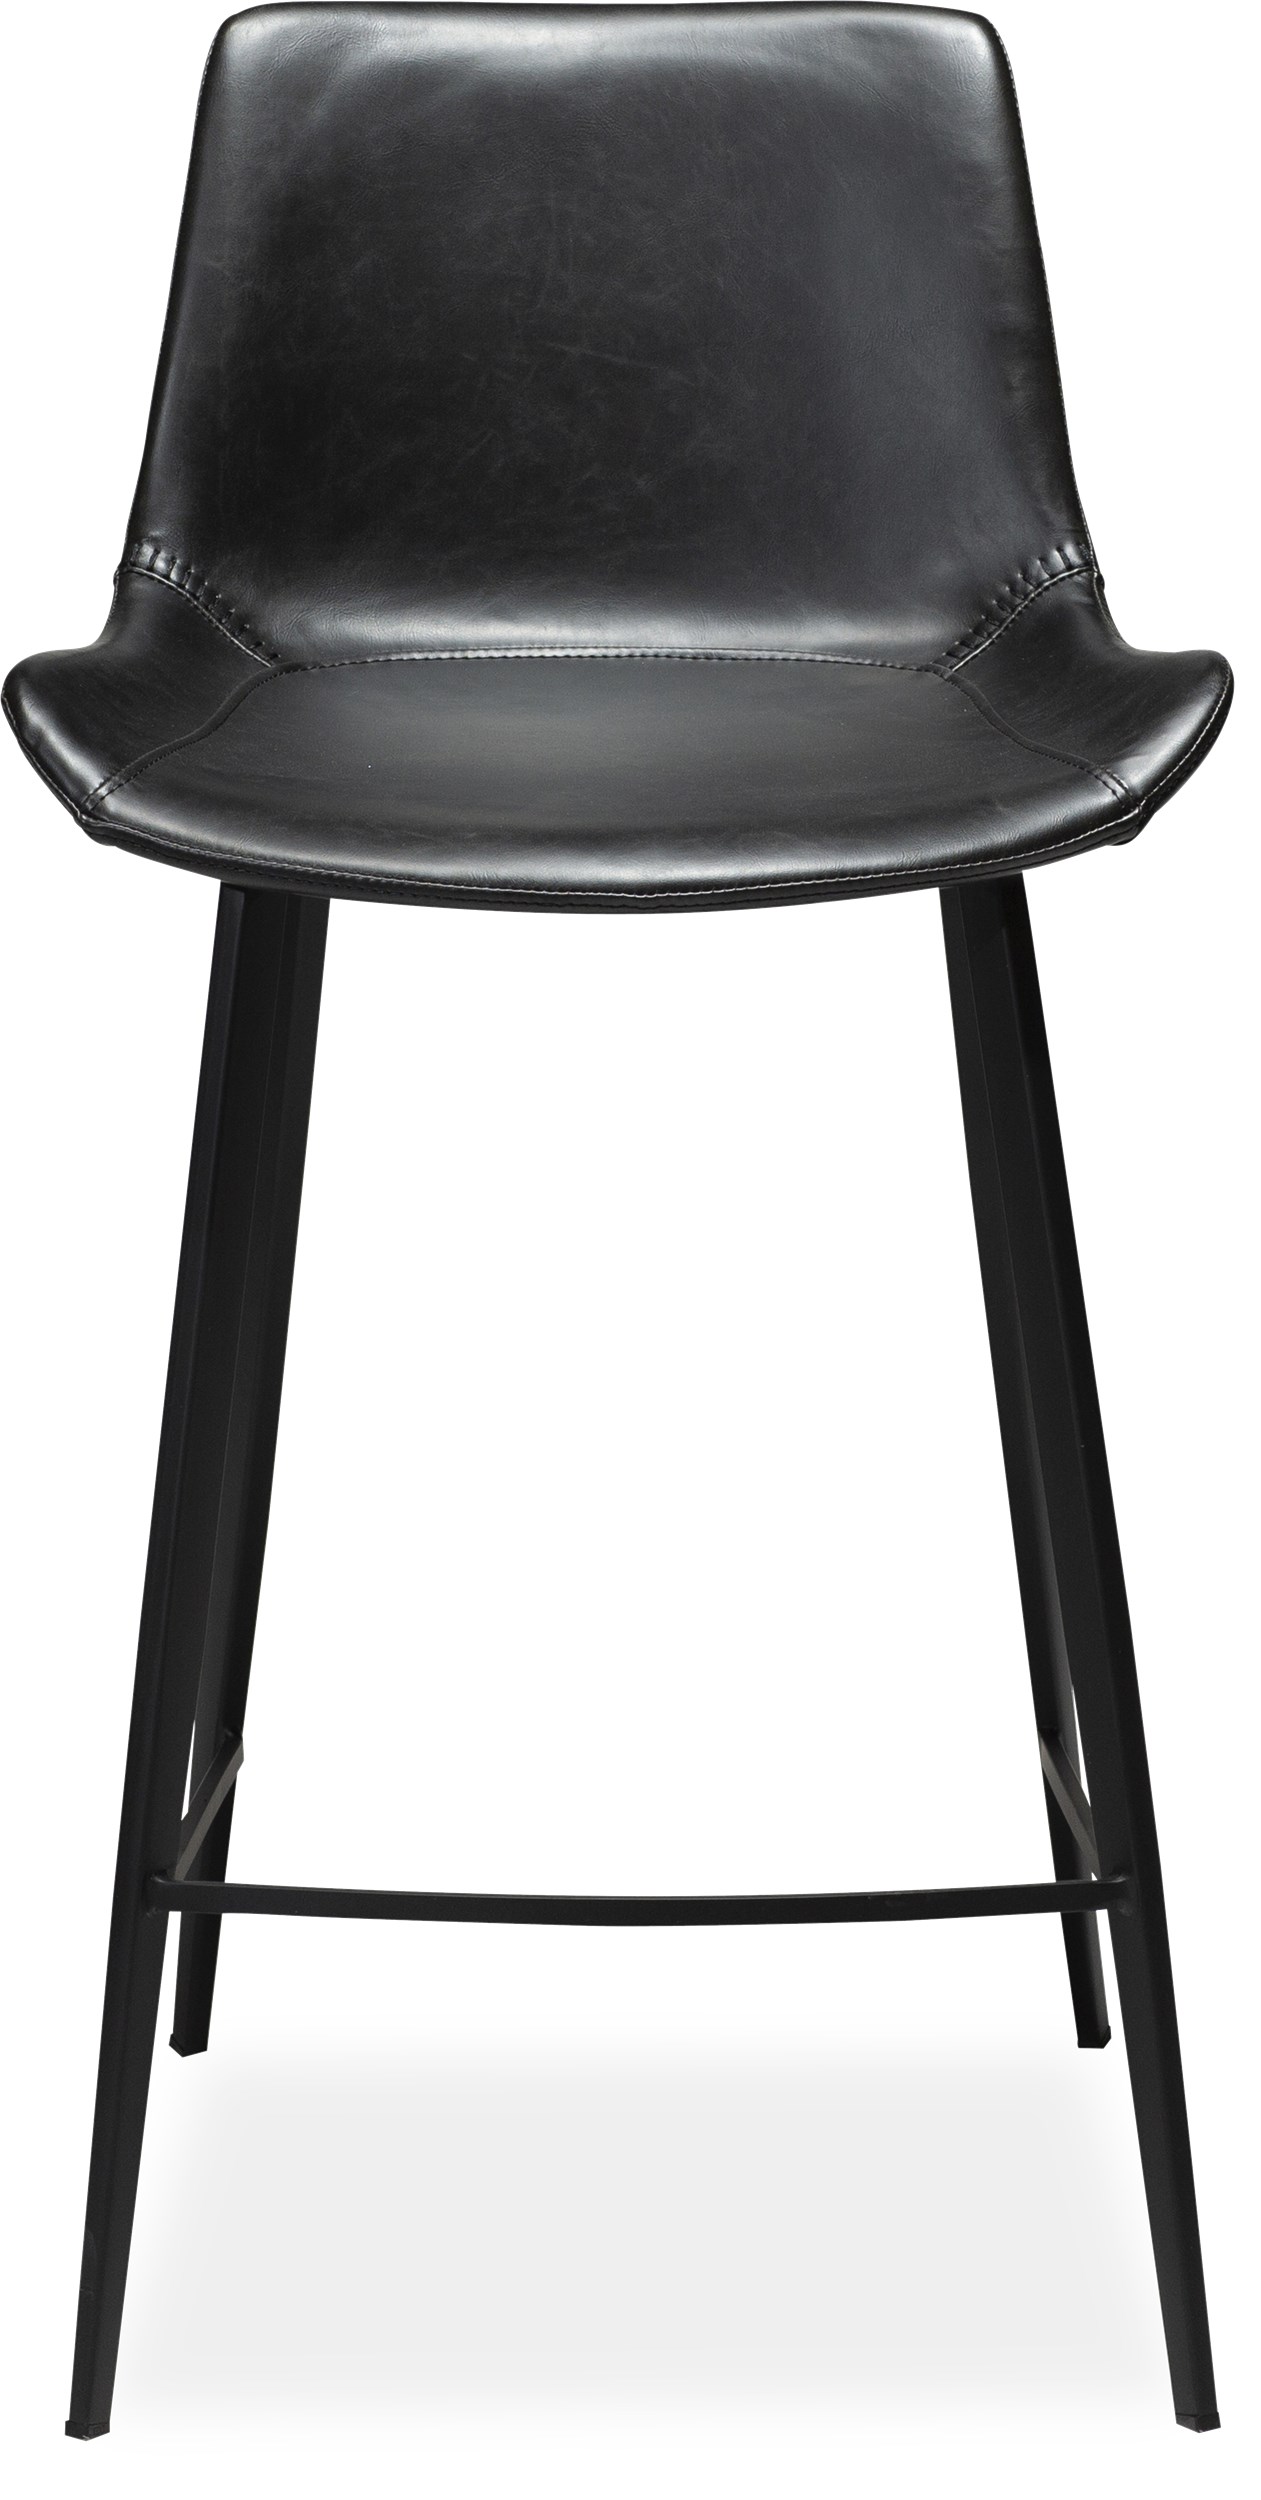 Hype Counterstol - sæde i sort vintage kunstlæder og ben i sortlakeret metal